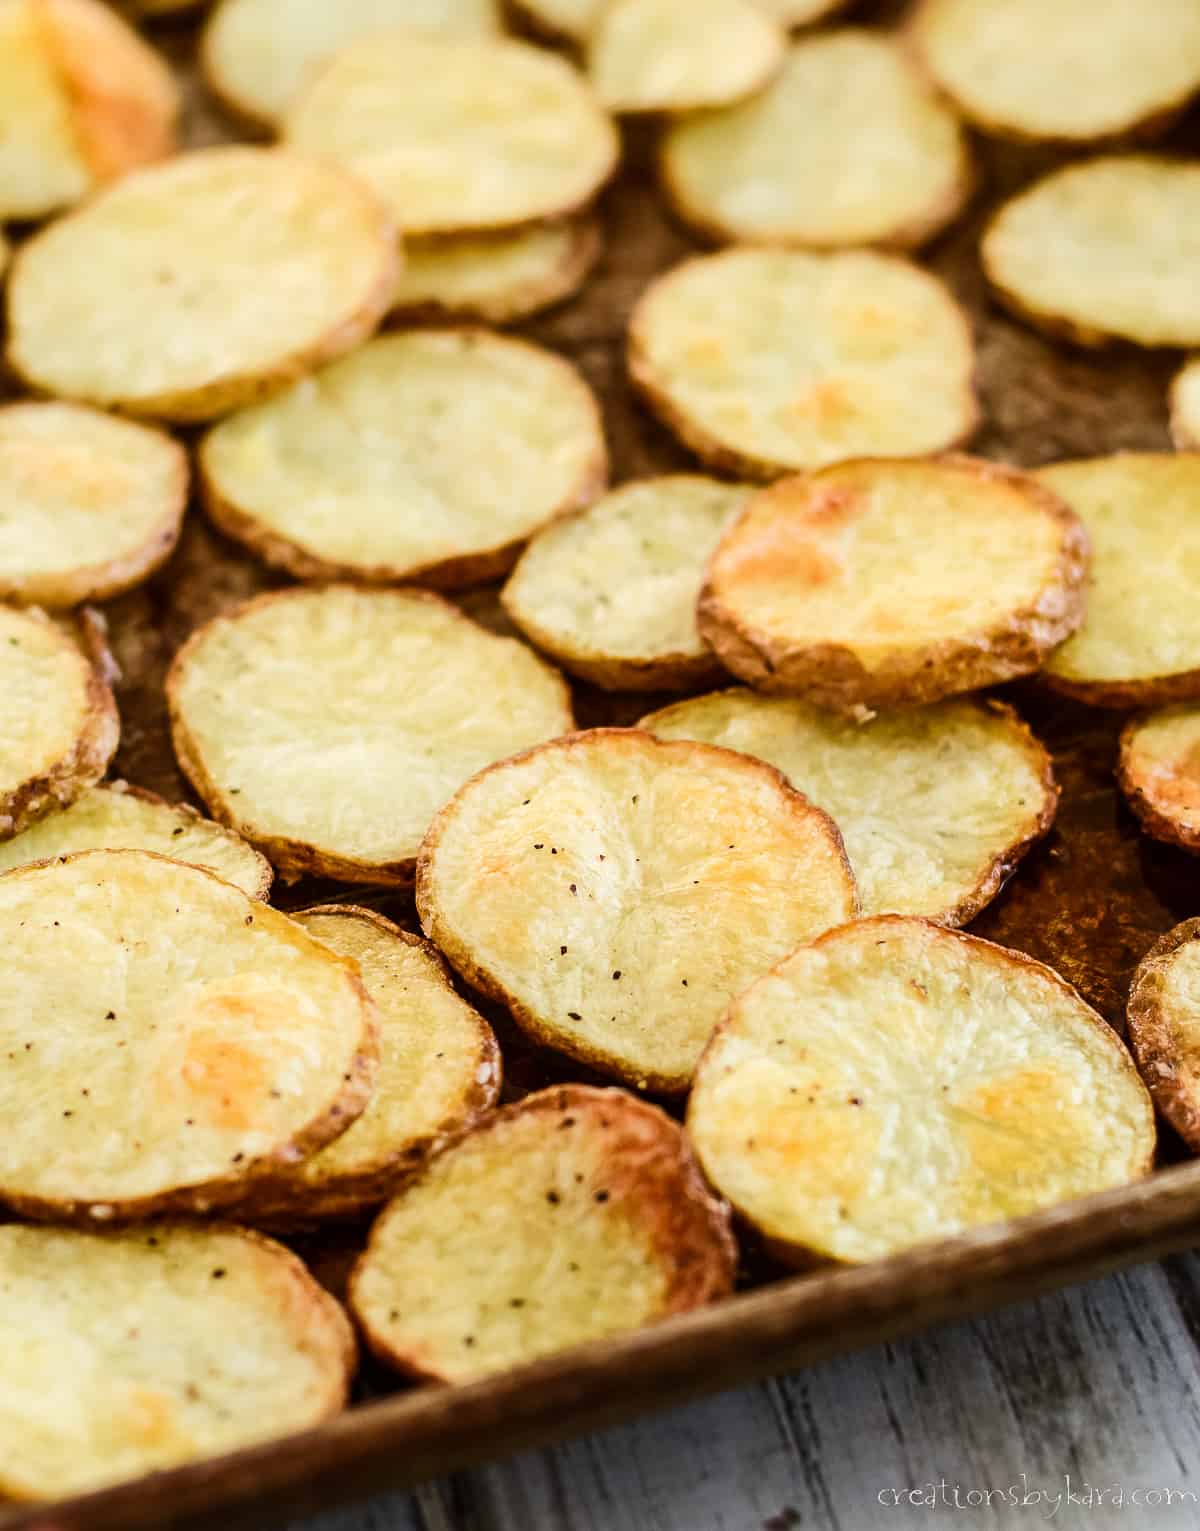 pan of crisp baked potato slices